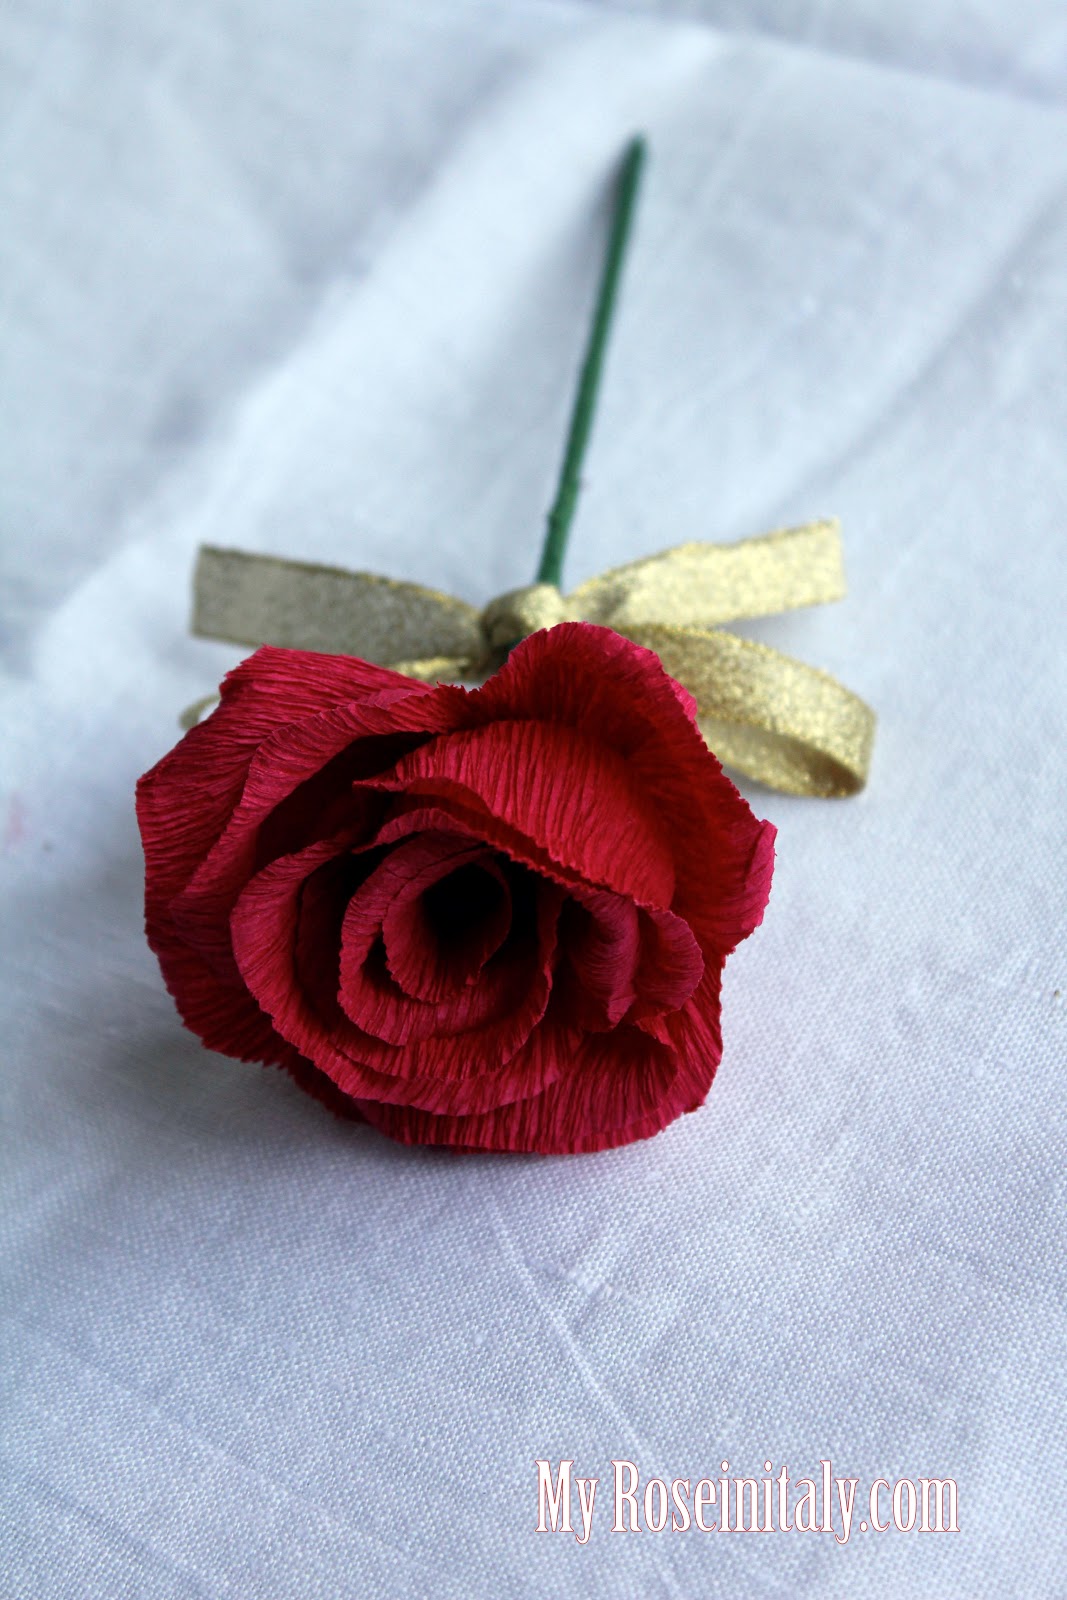 My Roseinitaly Rose Di Carta Crespa